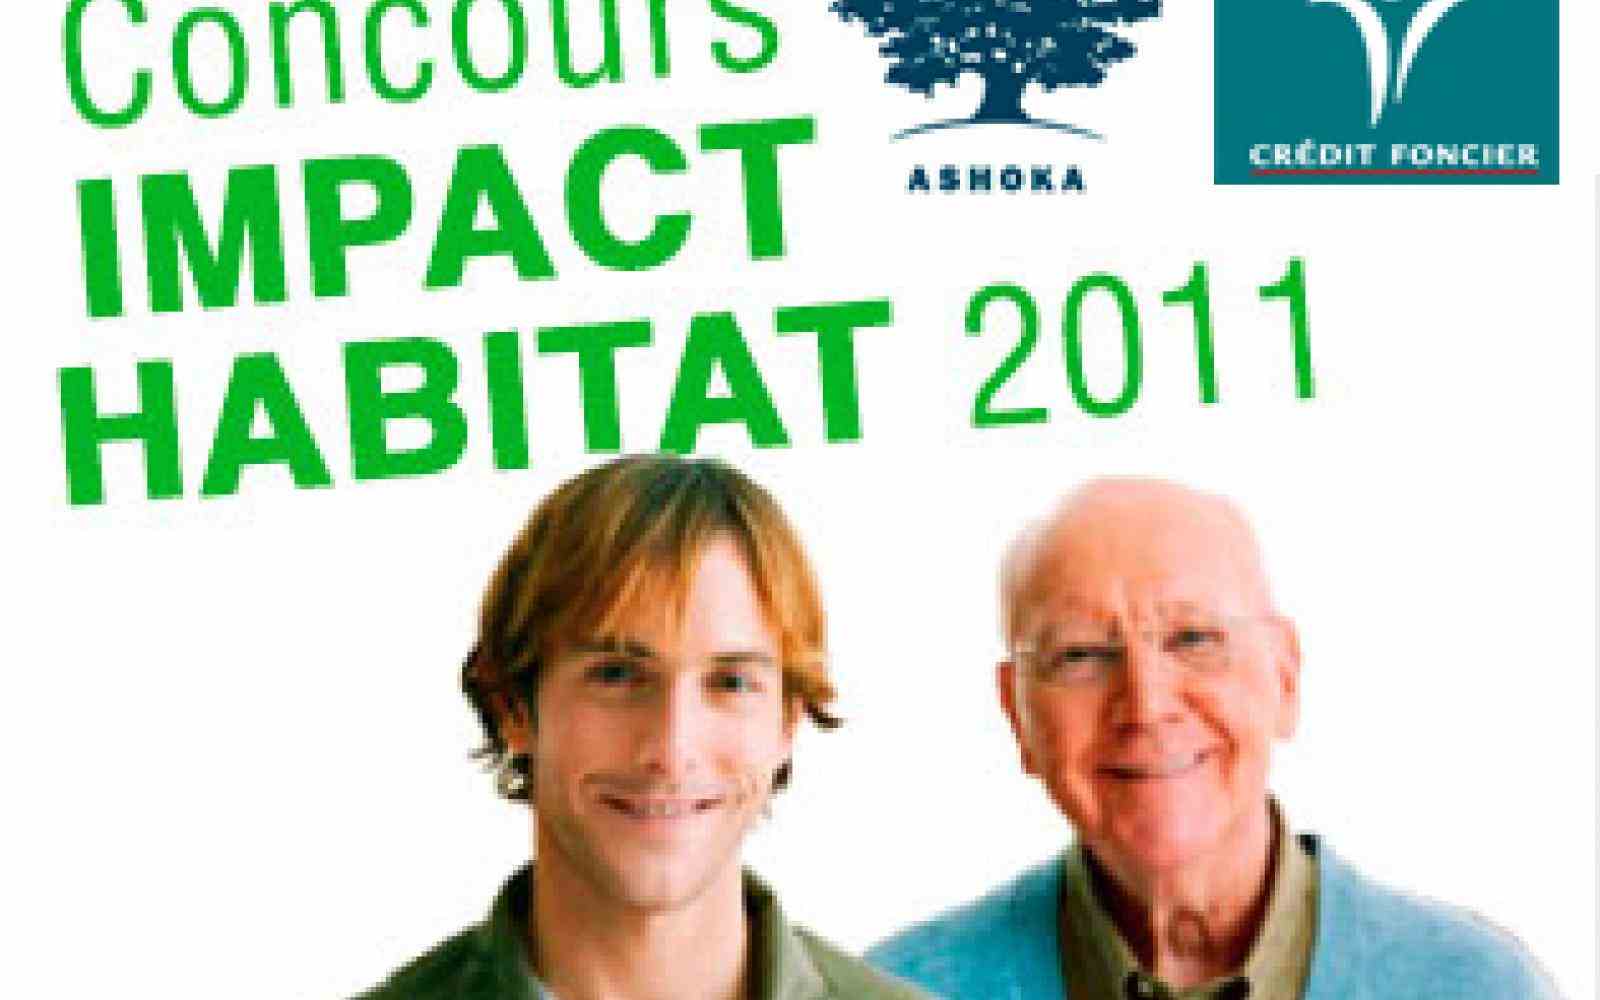 Concours Impact Habitat 2011